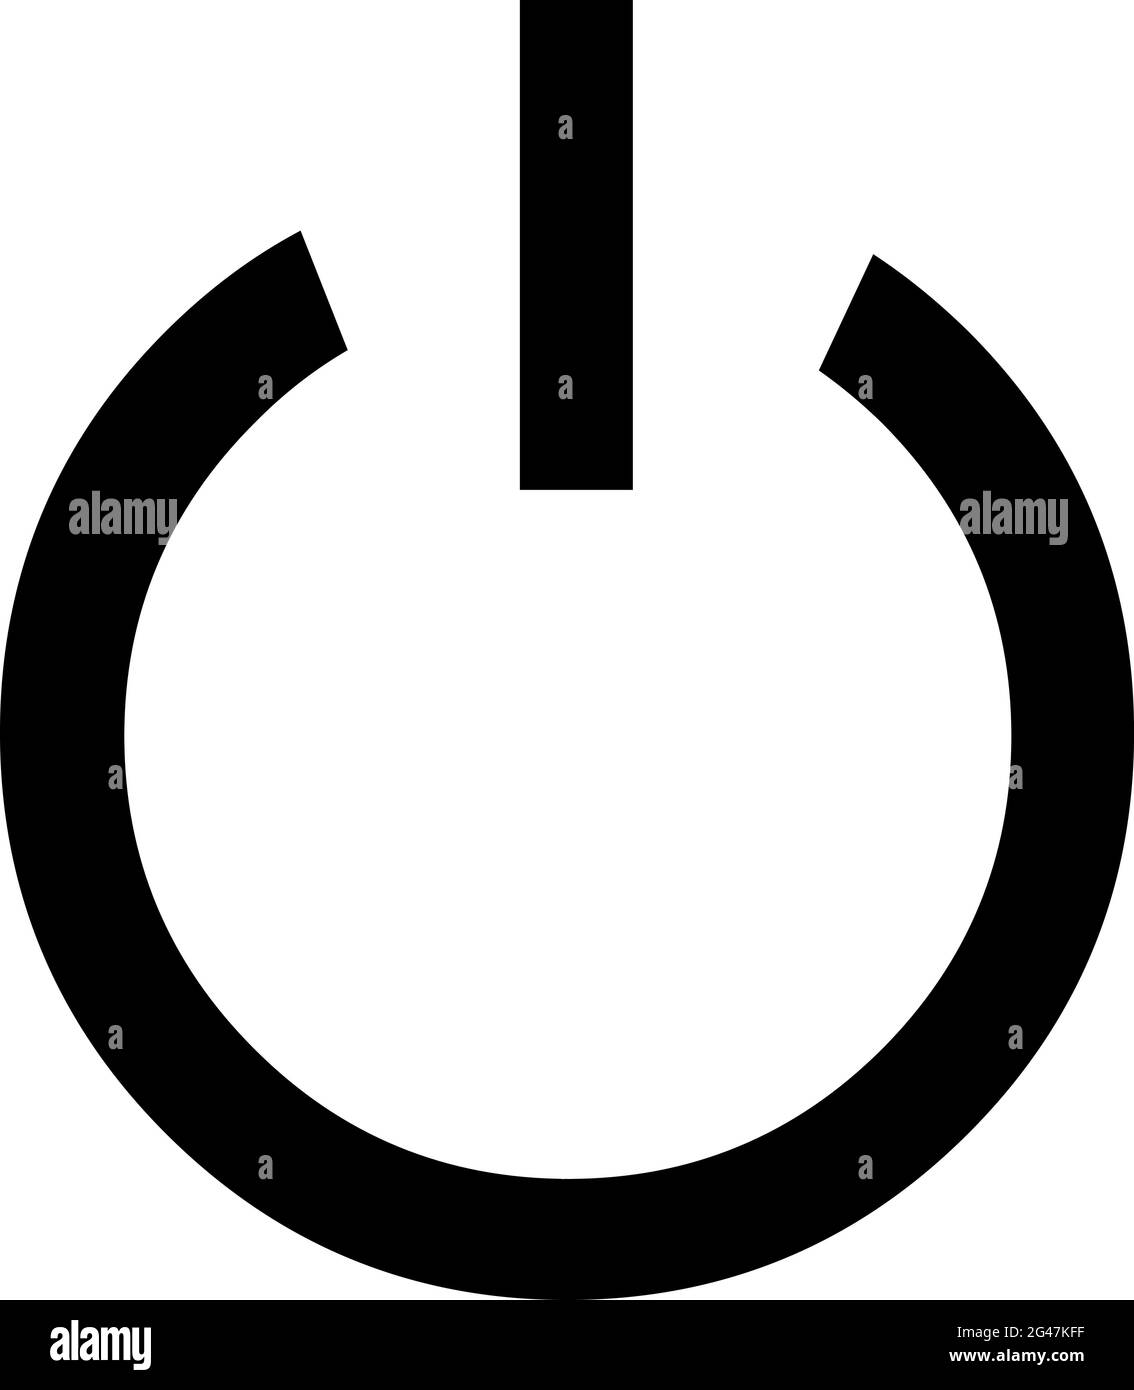 Illustrazione vettoriale del simbolo o dell'icona attivata e disattivata Illustrazione Vettoriale